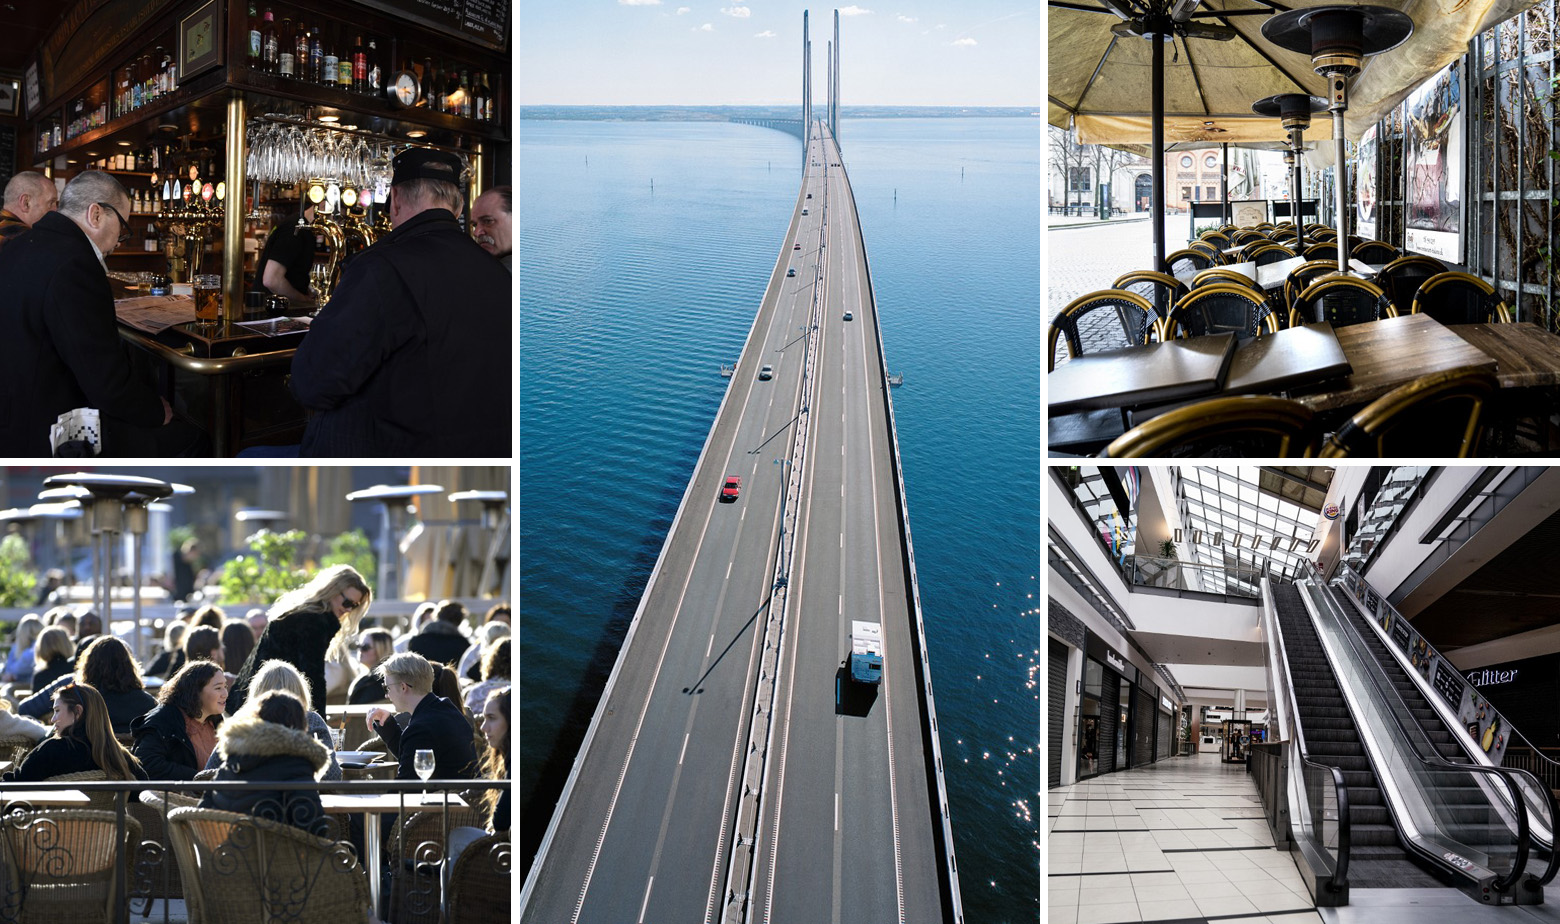 Lijevo prizori iz Švedske, u sredini Oresundski most, desno prizori iz Danske